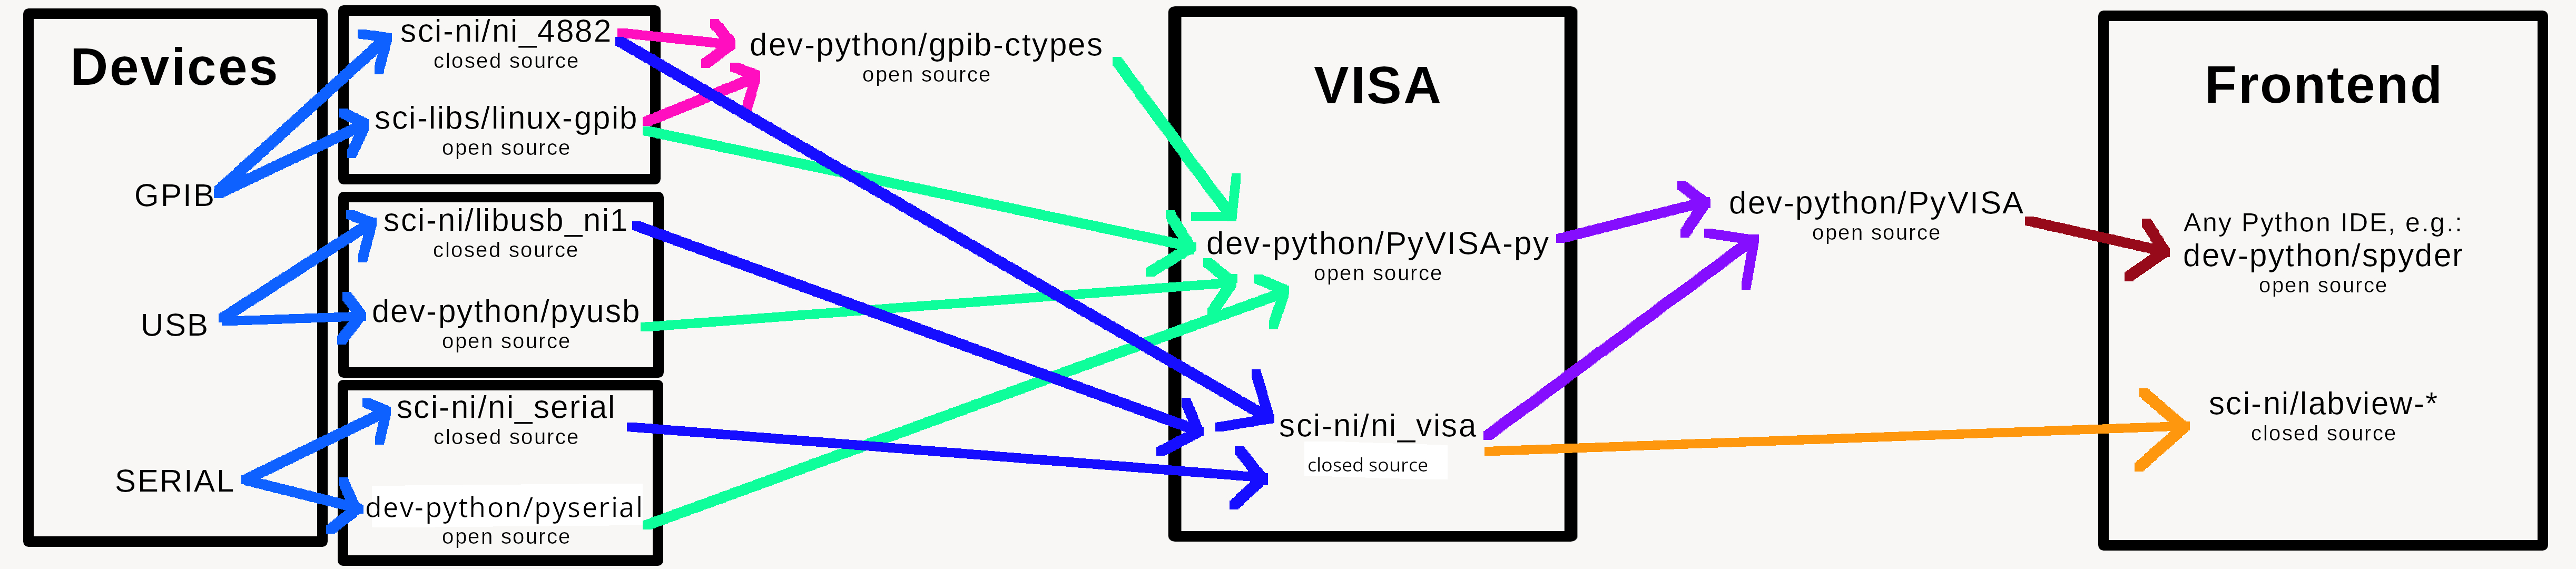 visa-diagram